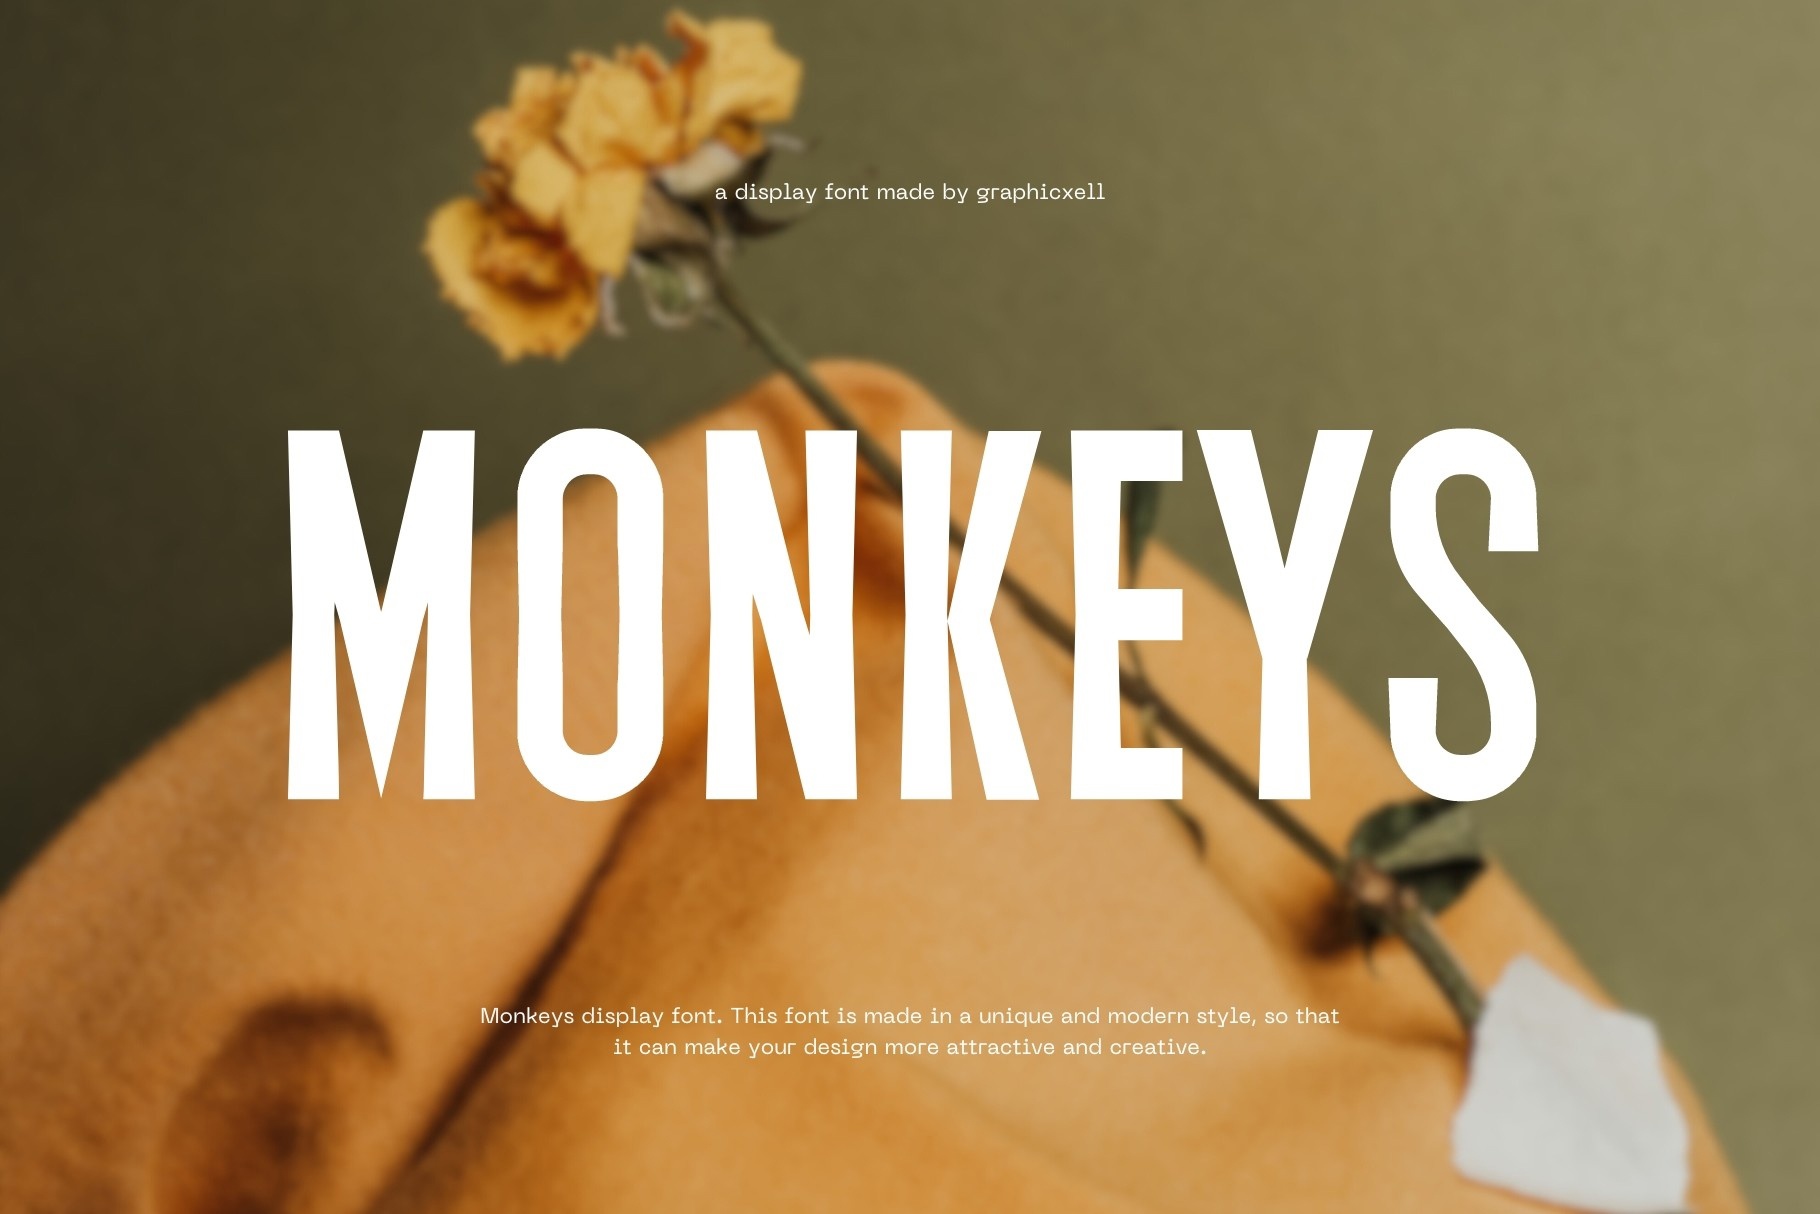 Ejemplo de fuente Monkeys